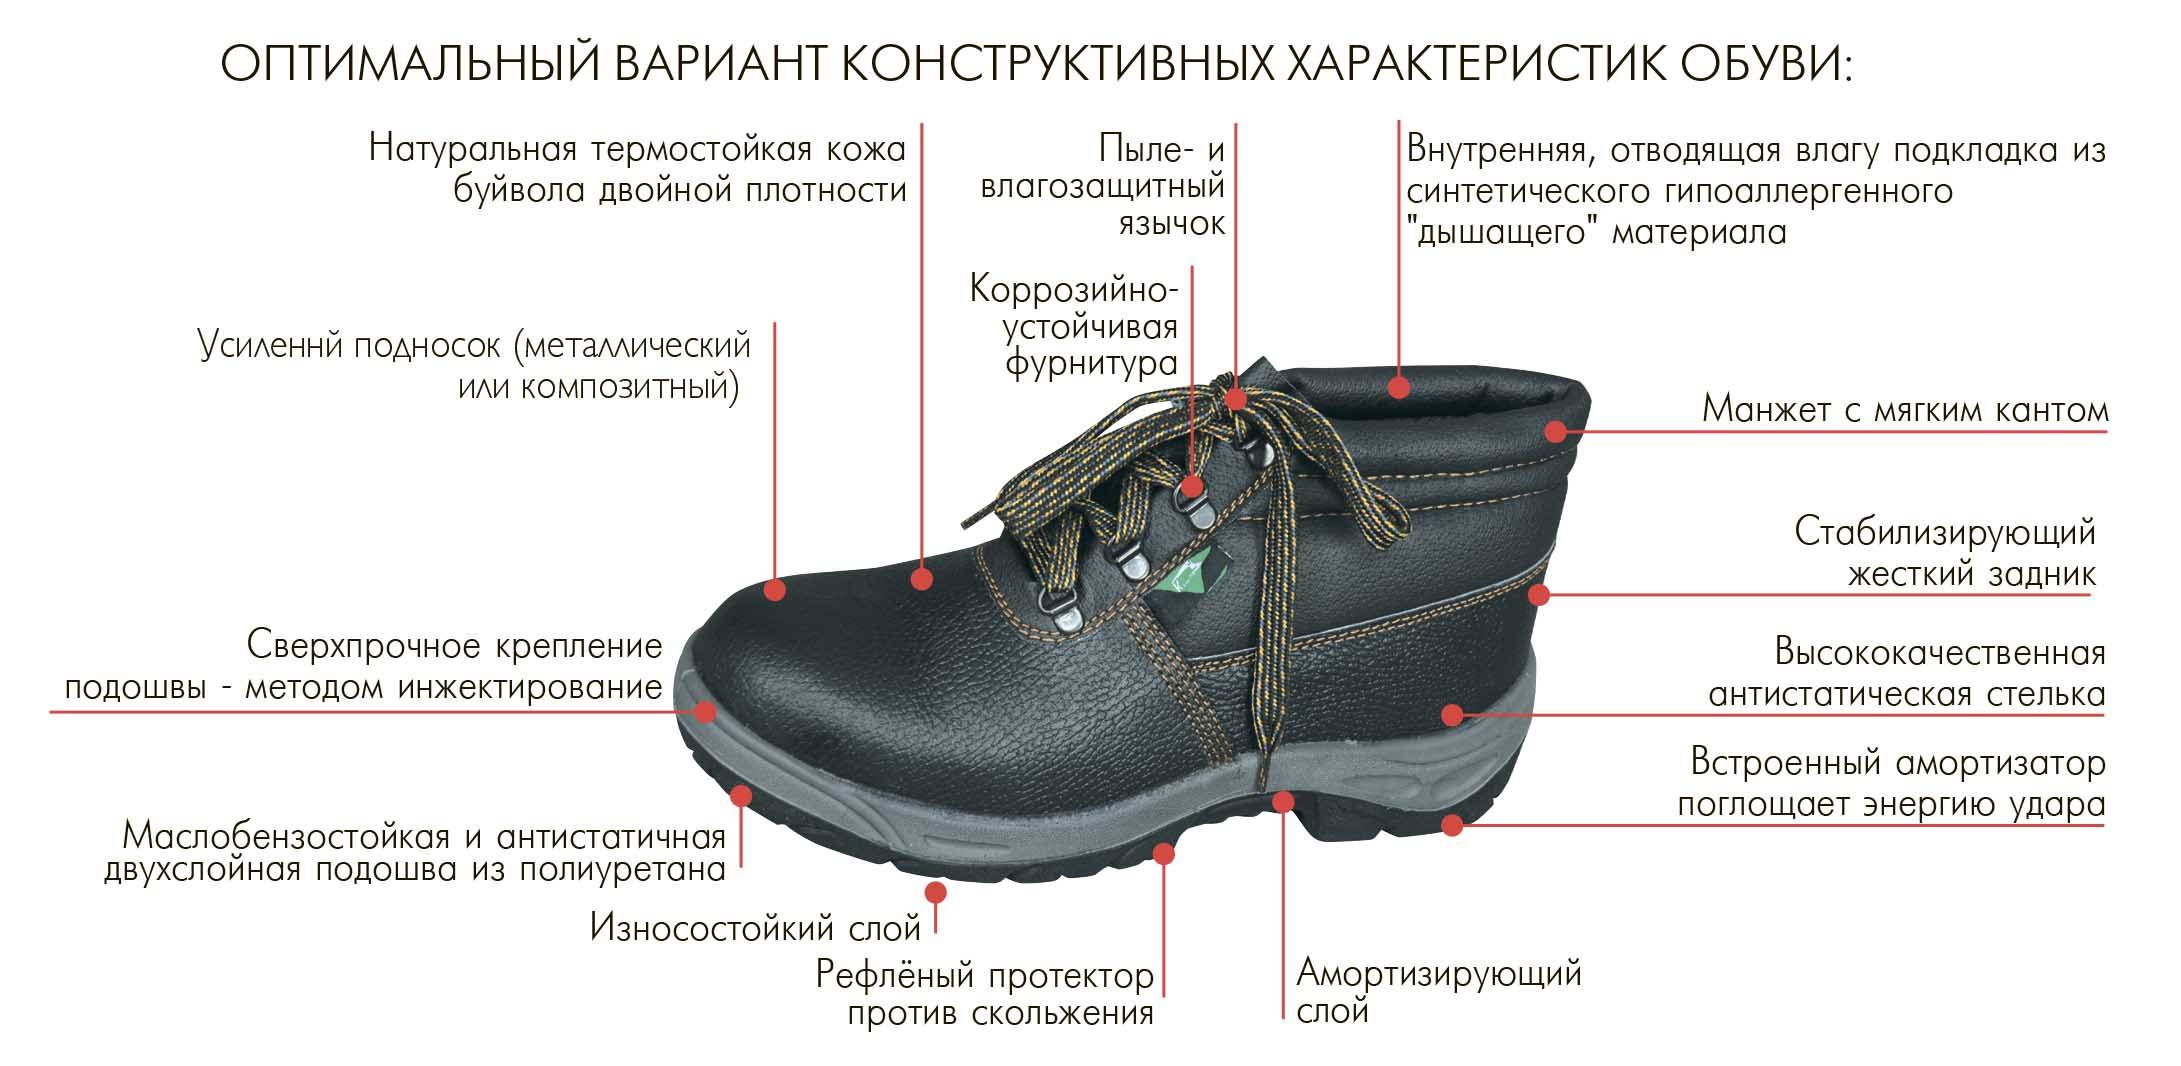 Образец обуви